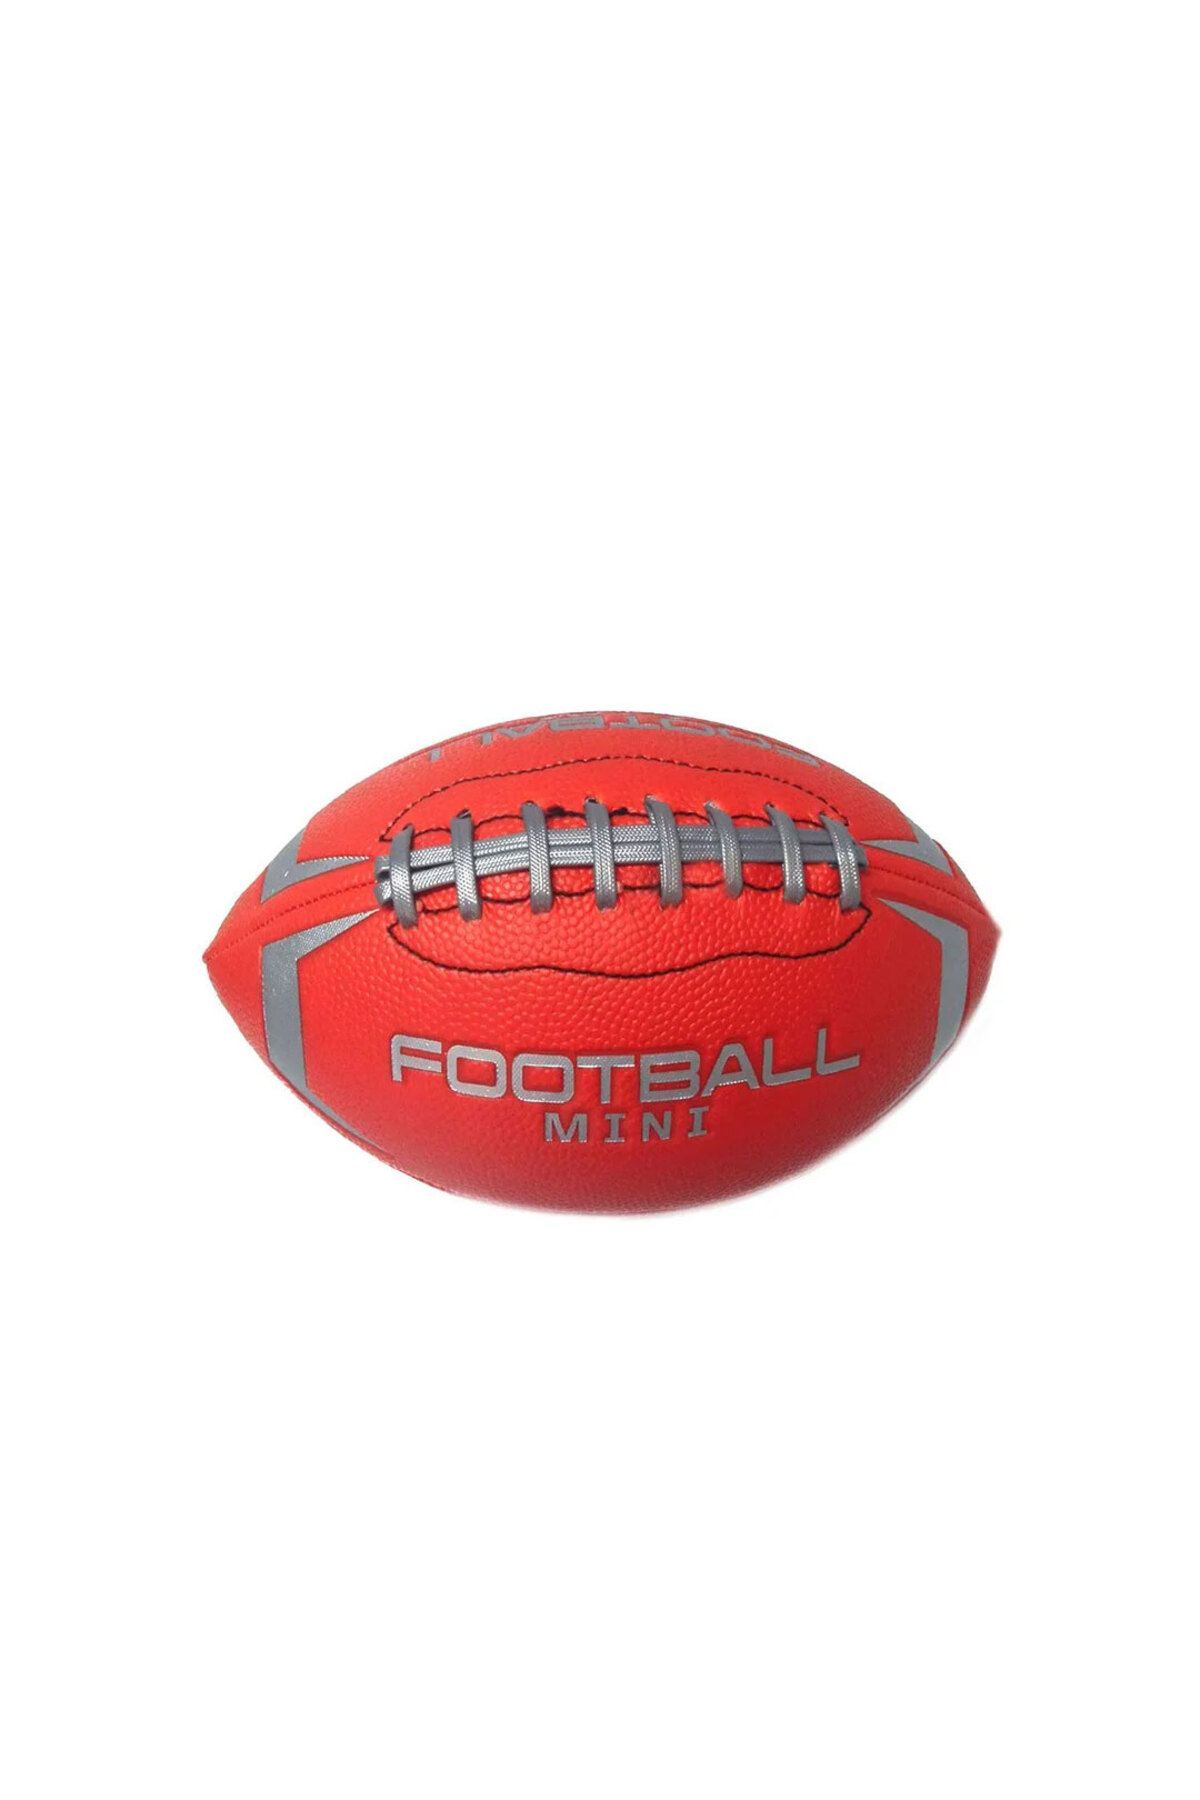 OYUNCAK STORE Eğlence Futbol Rugby Topu - Gençler yetişkinler için Kaliteli Futbol American Futbol Topu